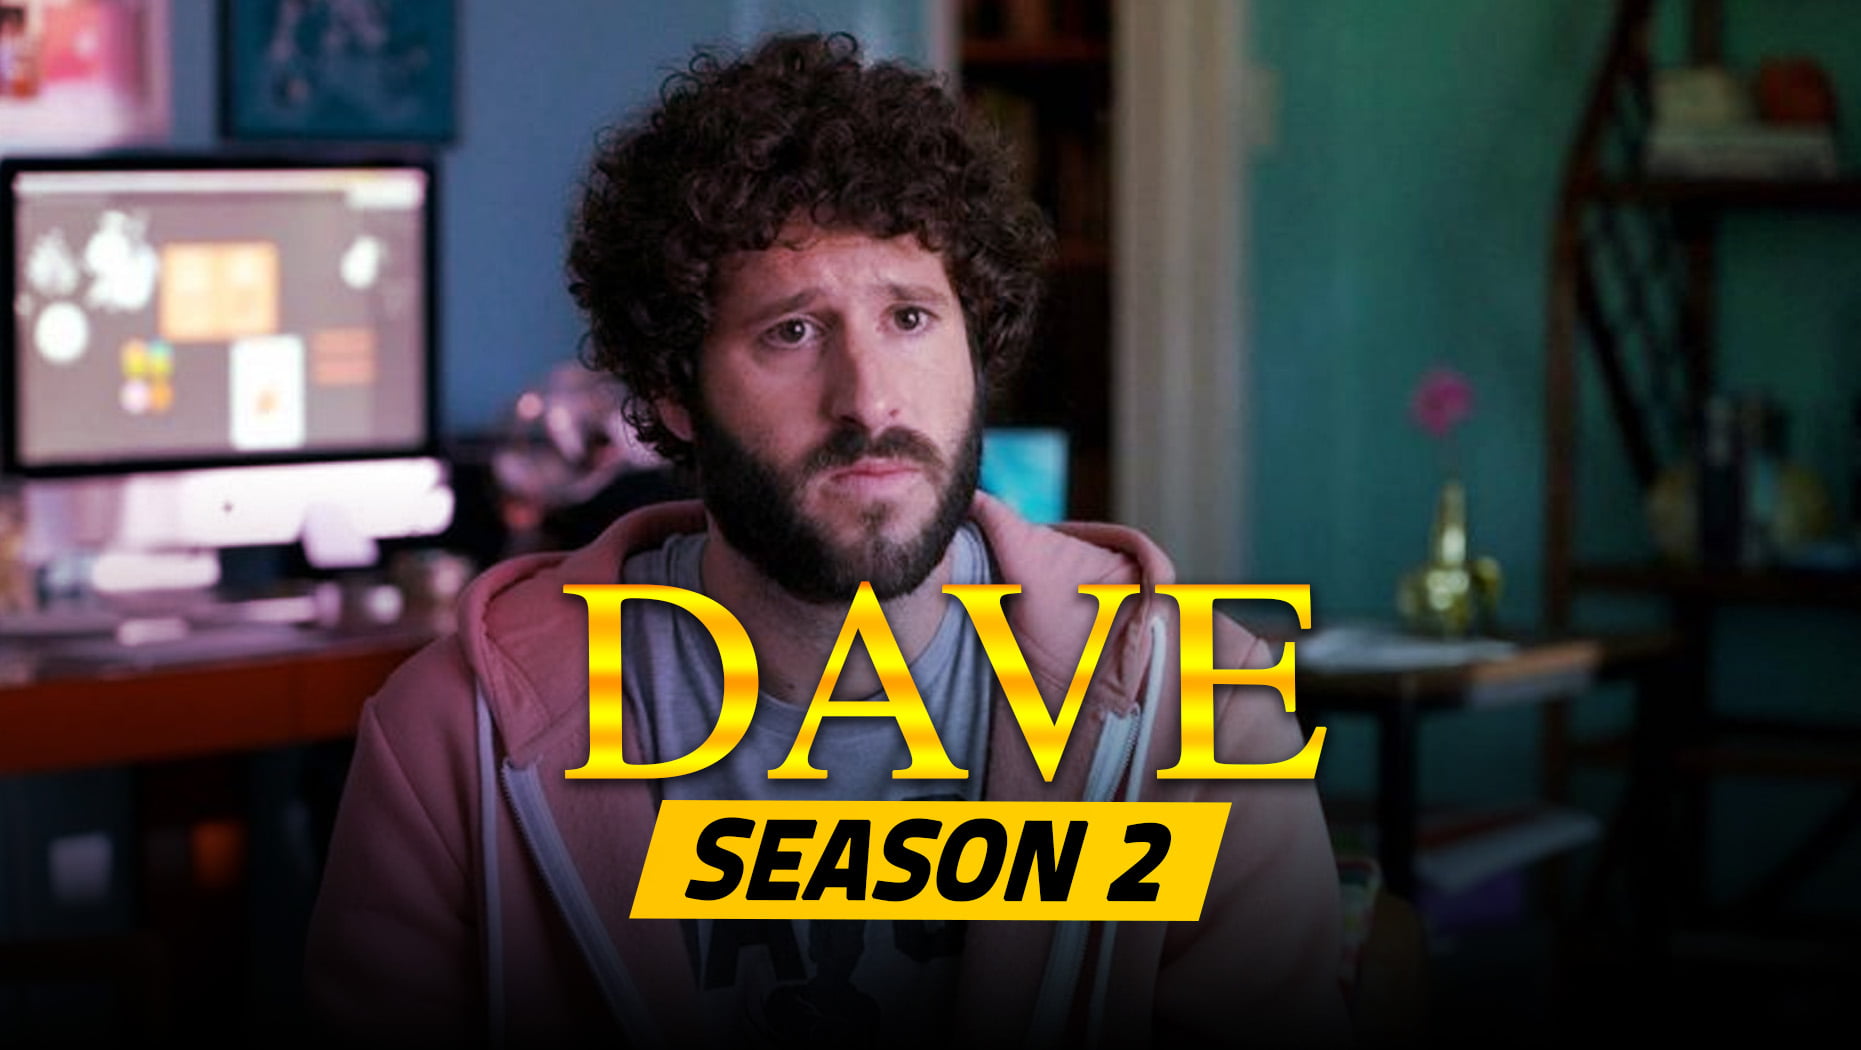 Dave Season 2 Plot